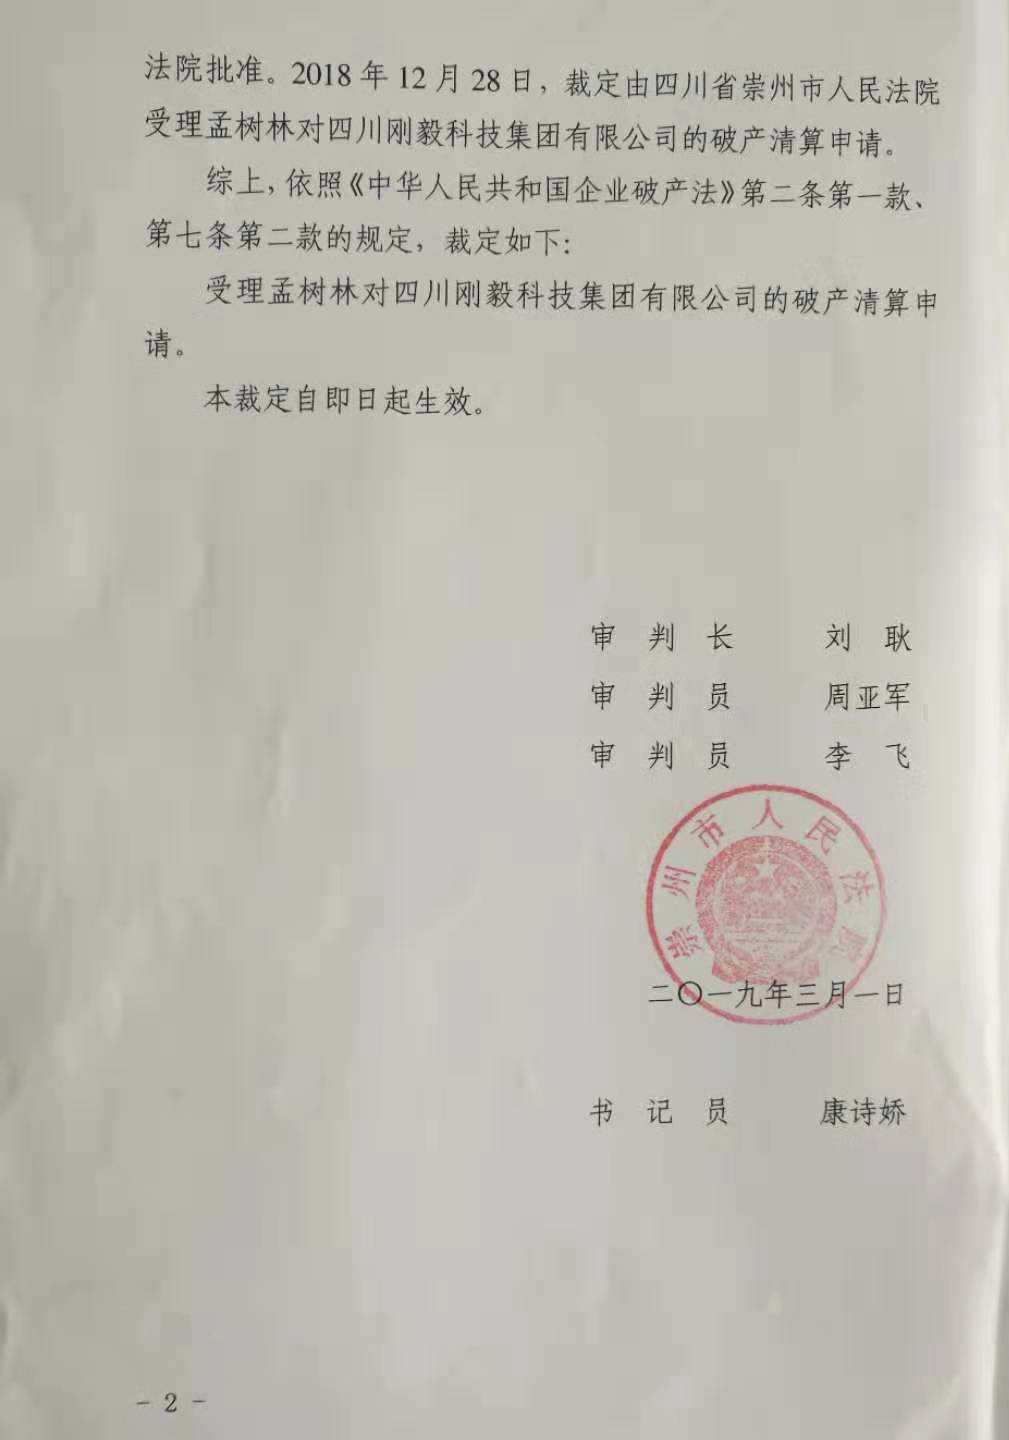 四川省崇州市人民法院指定我公司担任四川刚毅科技集团有限公司破产管理人